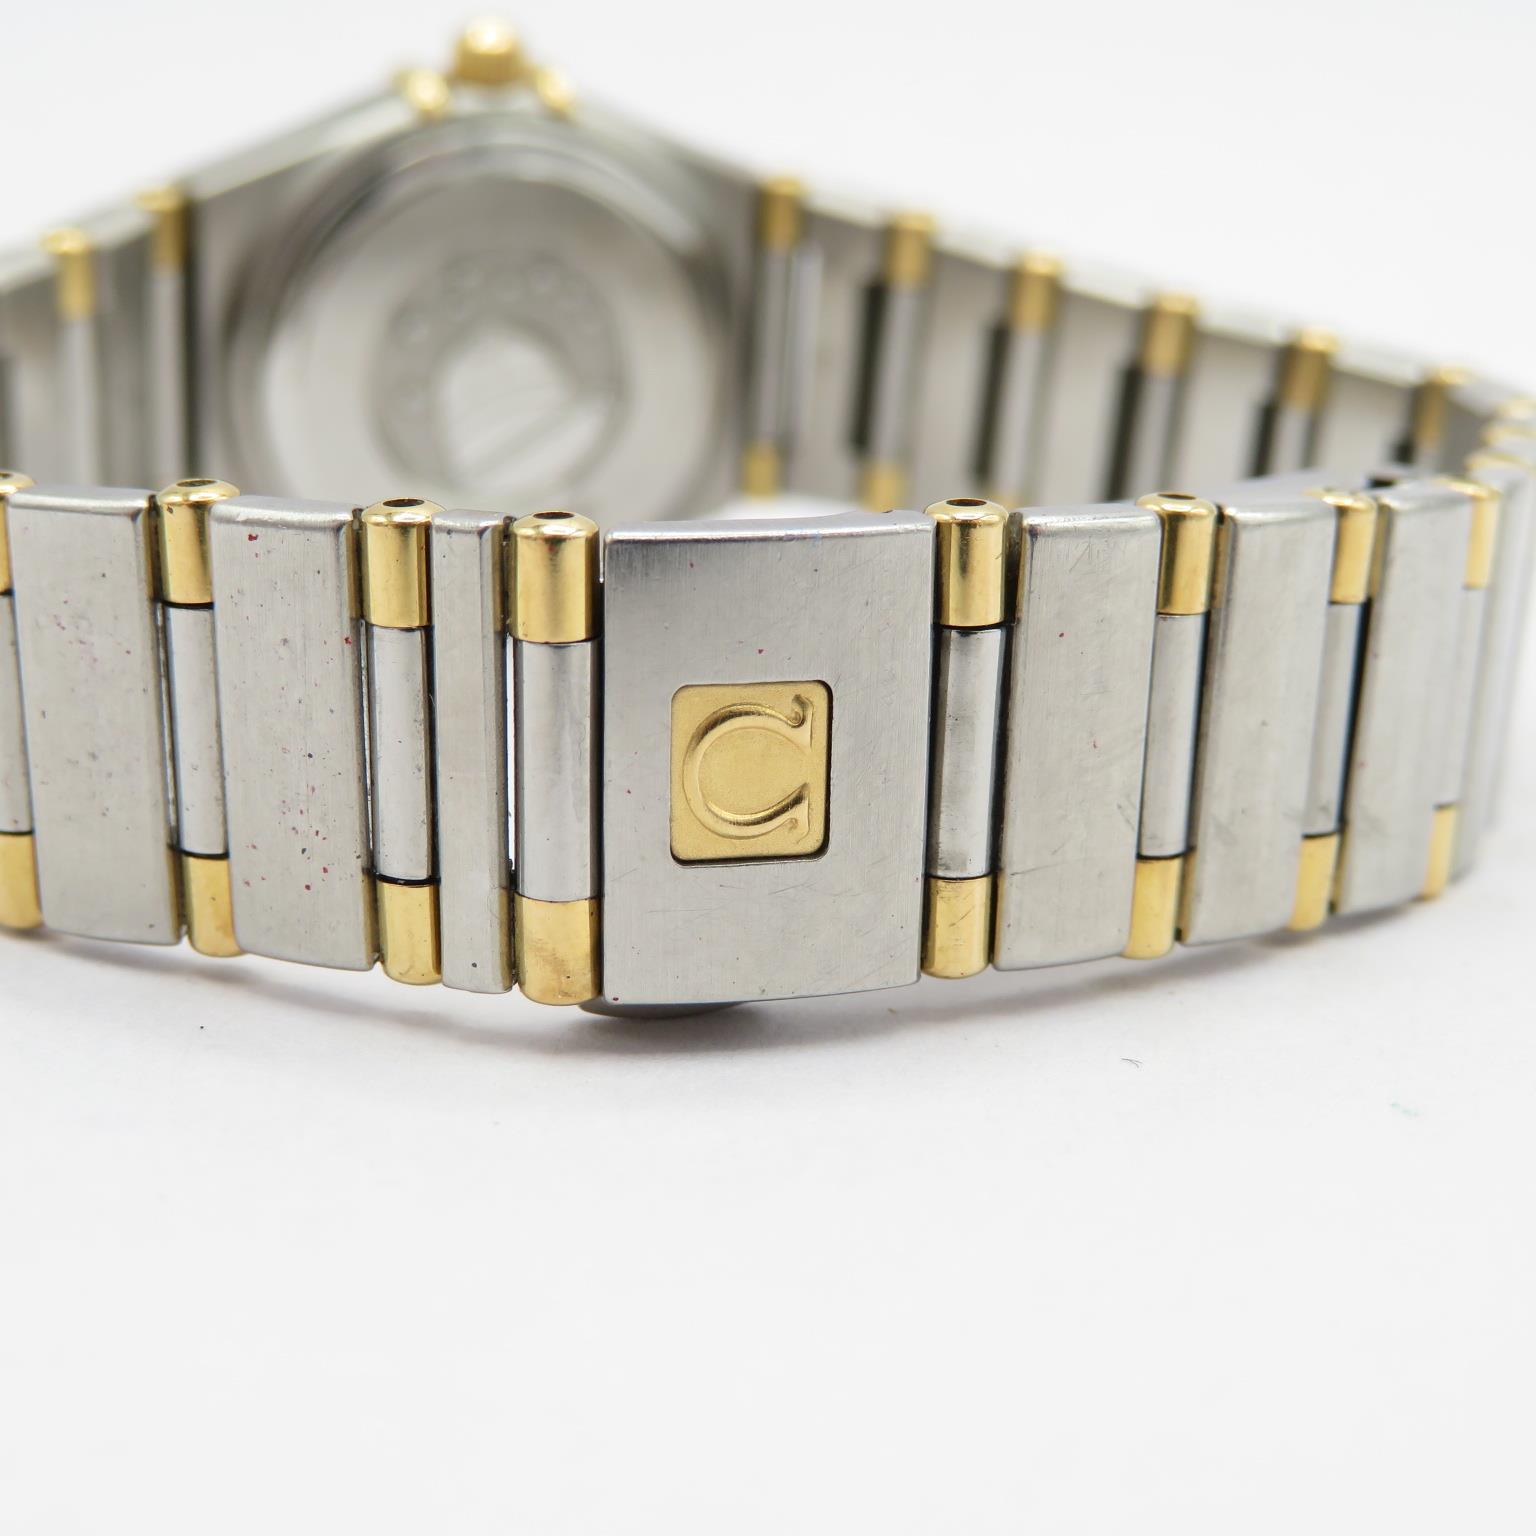 Omega Constellation Ladies steel and 18 ct gold quartz wristwatch requires service/repair requires - Image 4 of 7